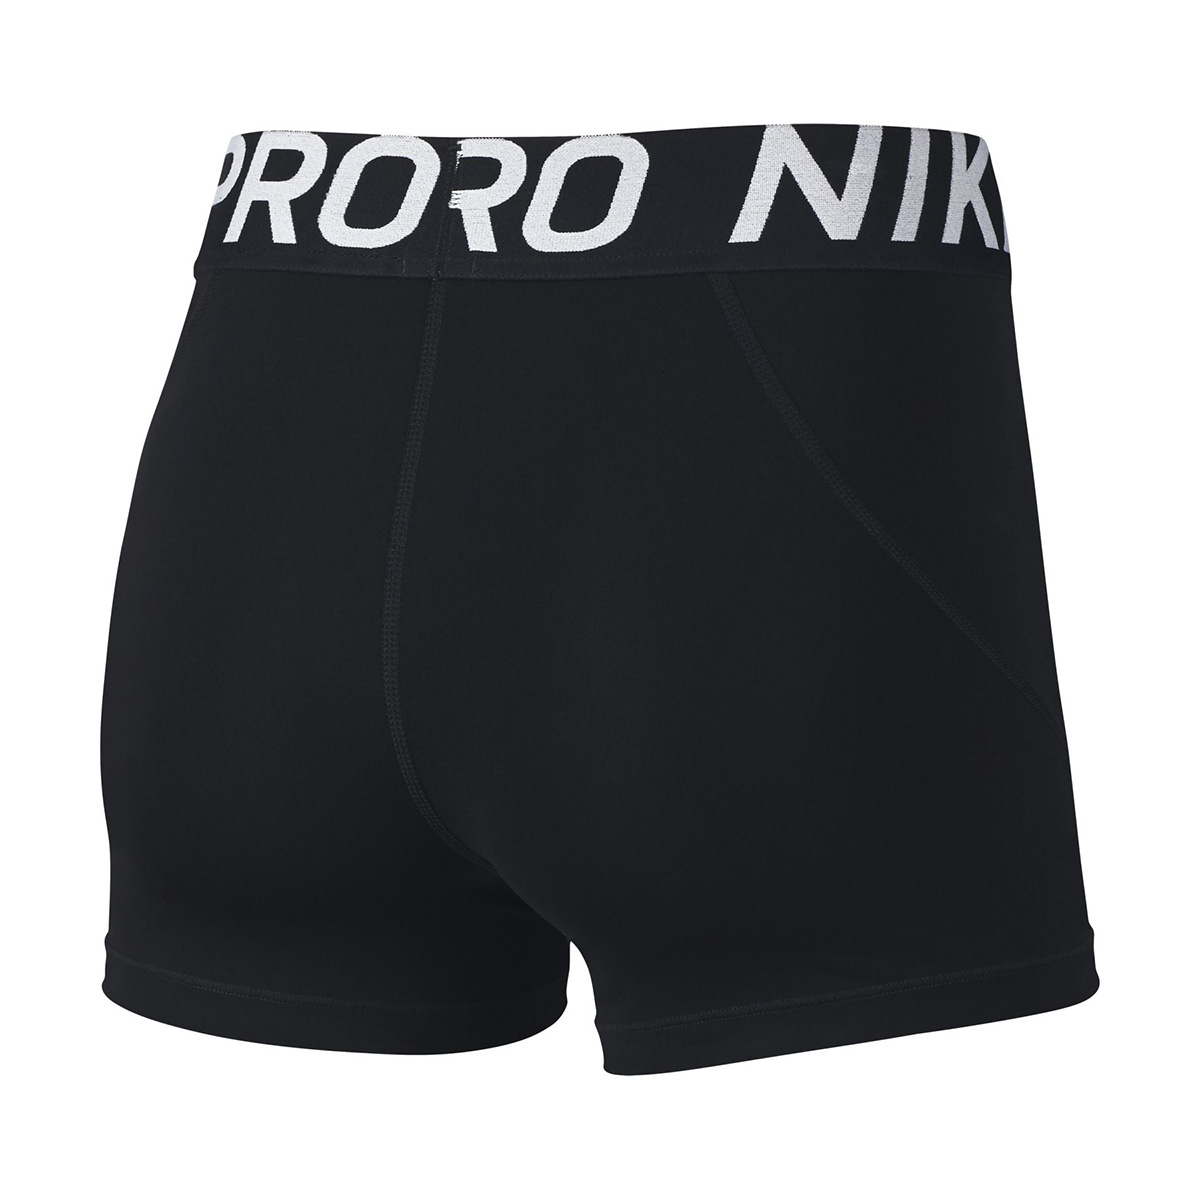 Nike Pro Short, , large image number null